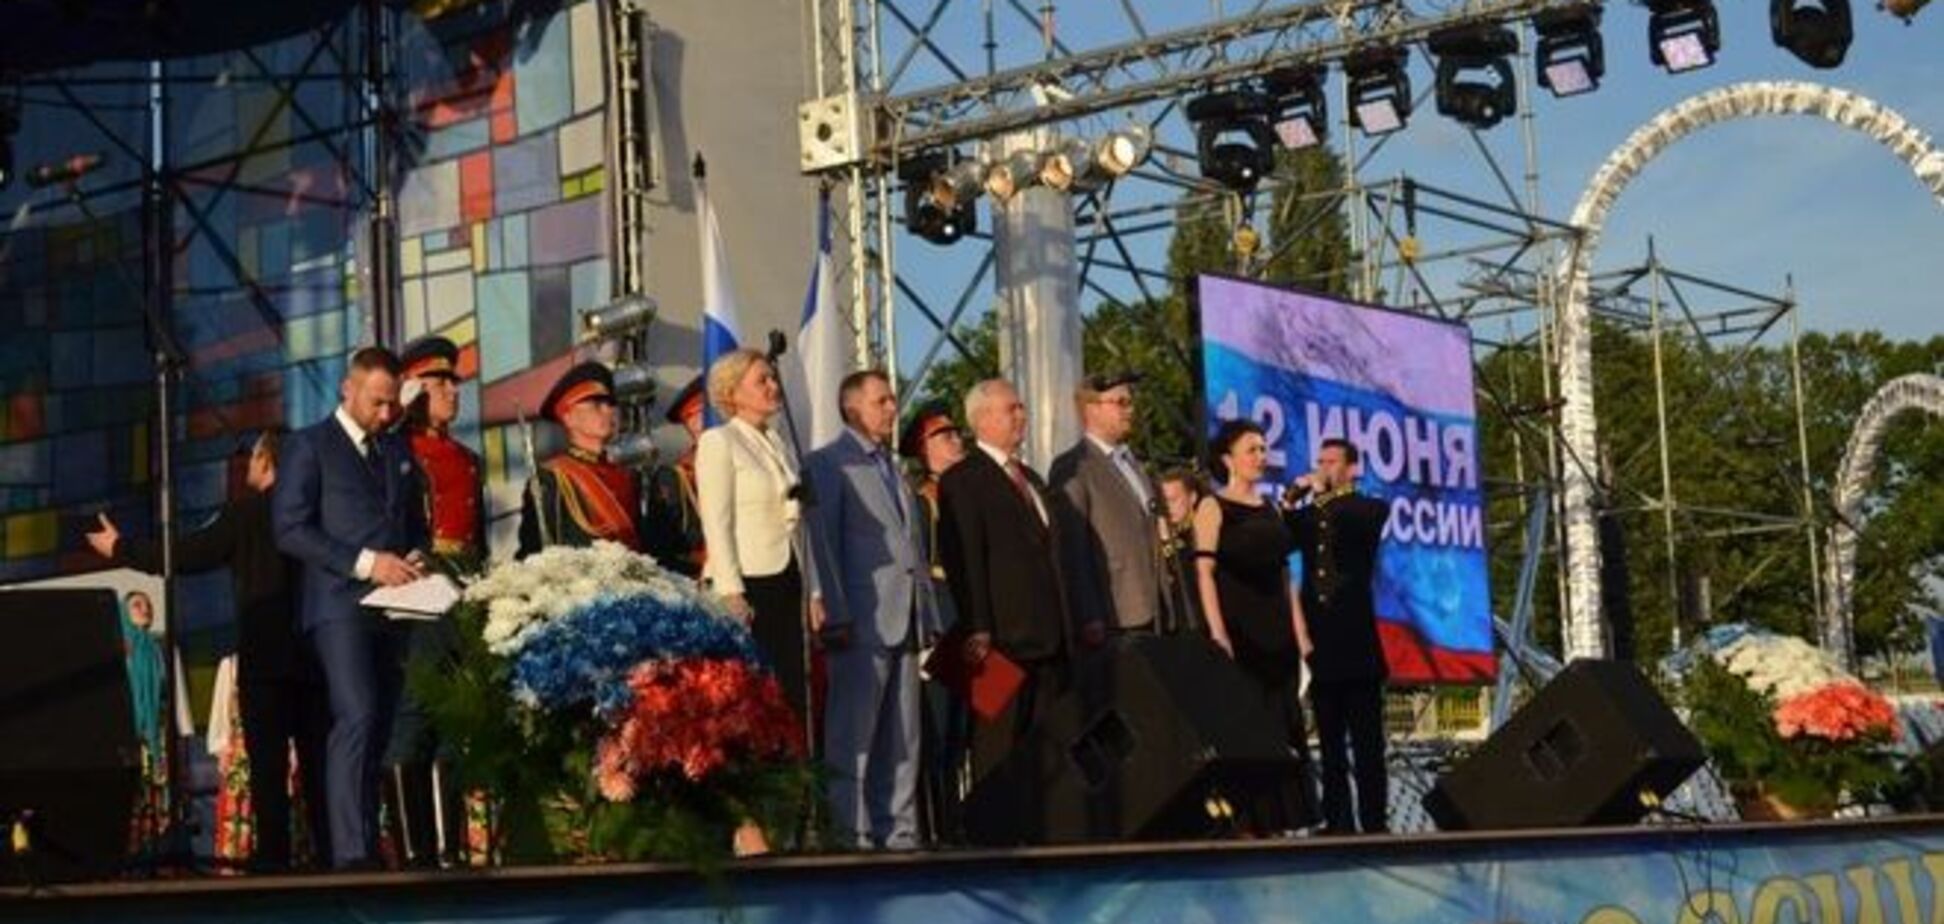 'Добрый вечер, россияне!' Шепелев вел концерт в аннексированном Крыму: фото- и видеофакты